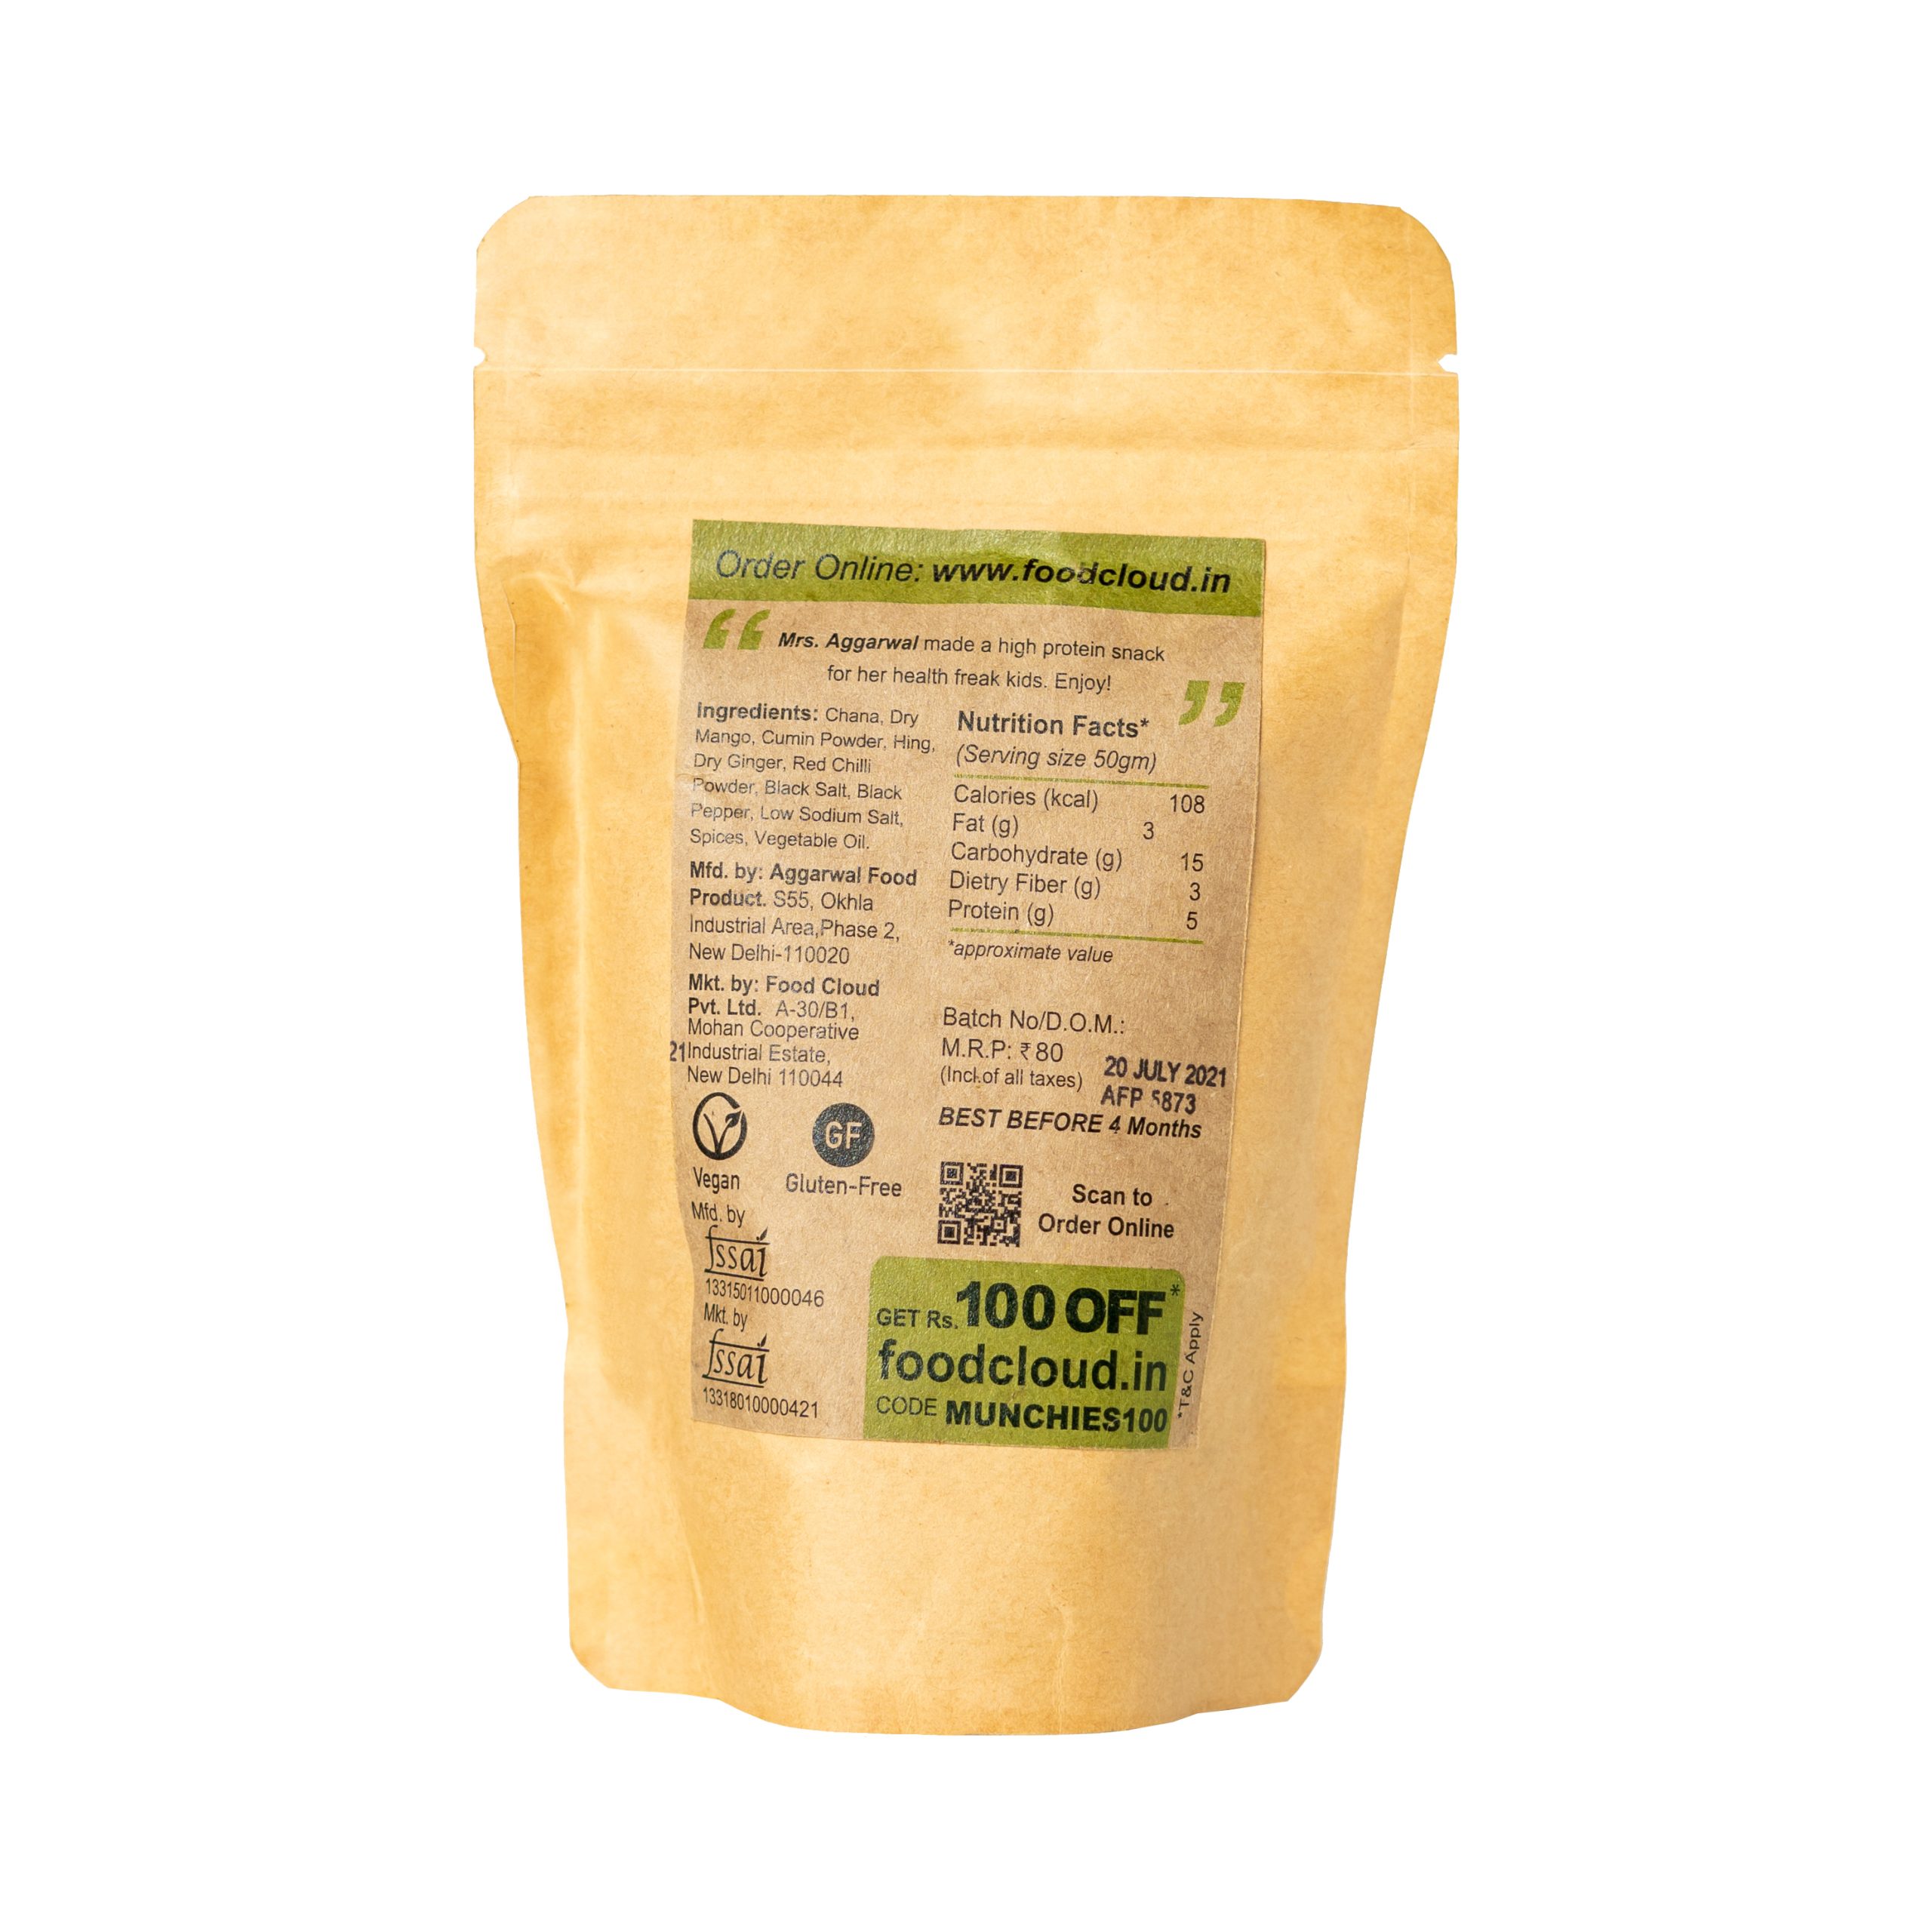 Product: FoodCloud Roasted Chana Jor Garam (Pack of 4)